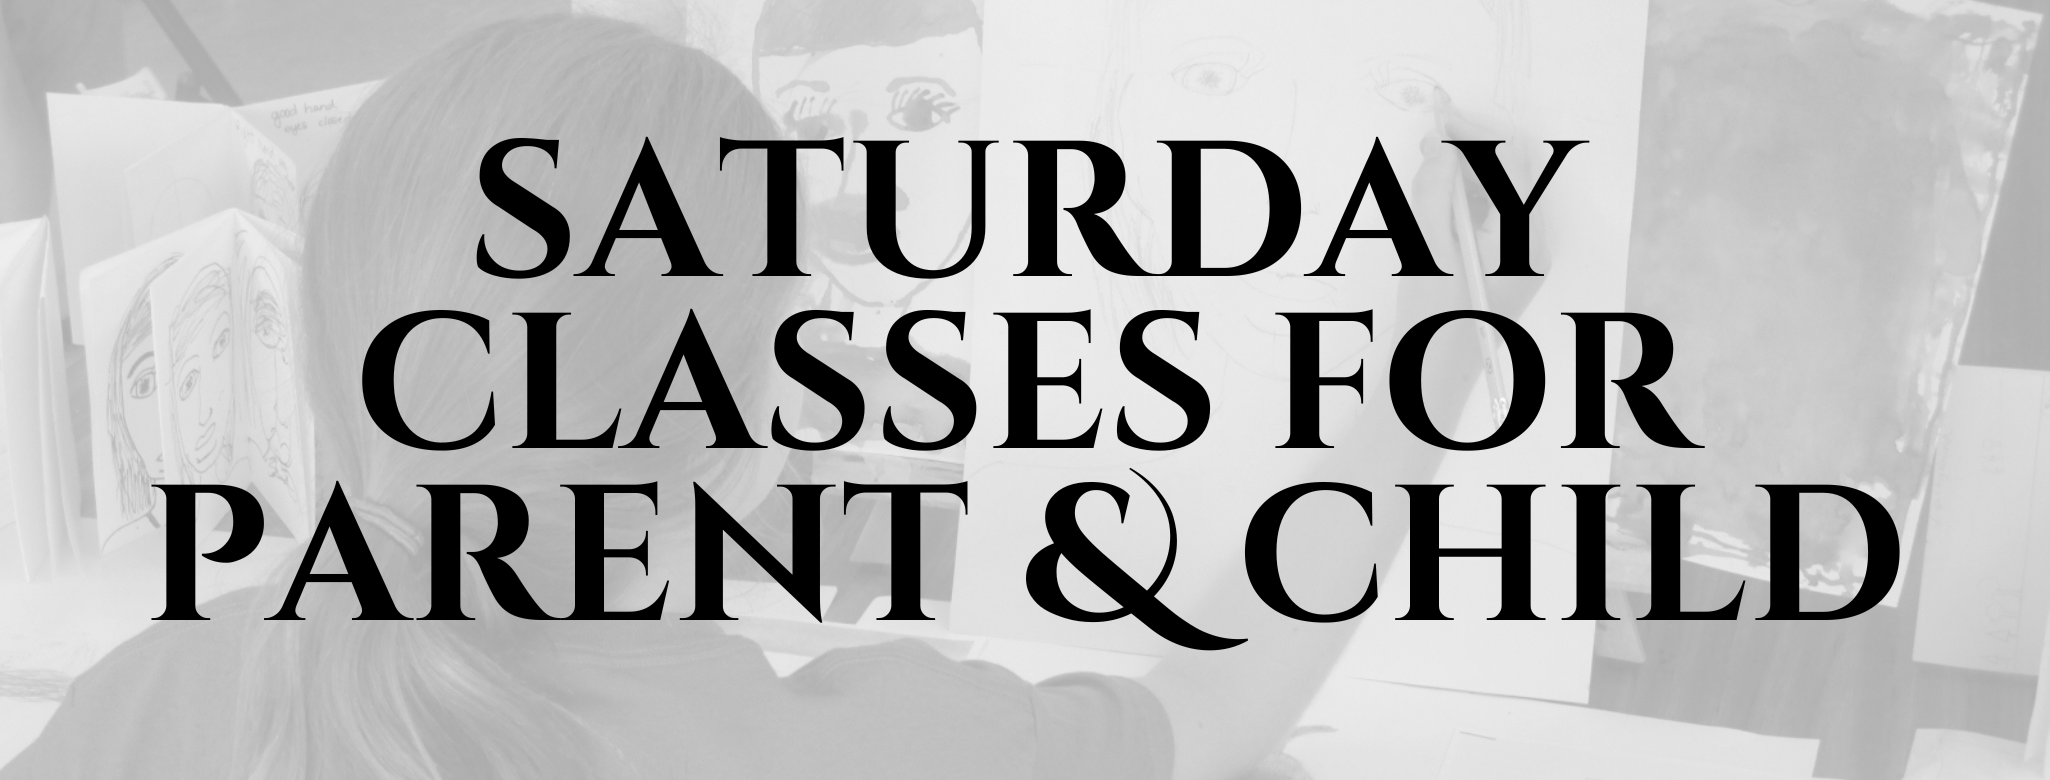 Parent and child Saturday classes